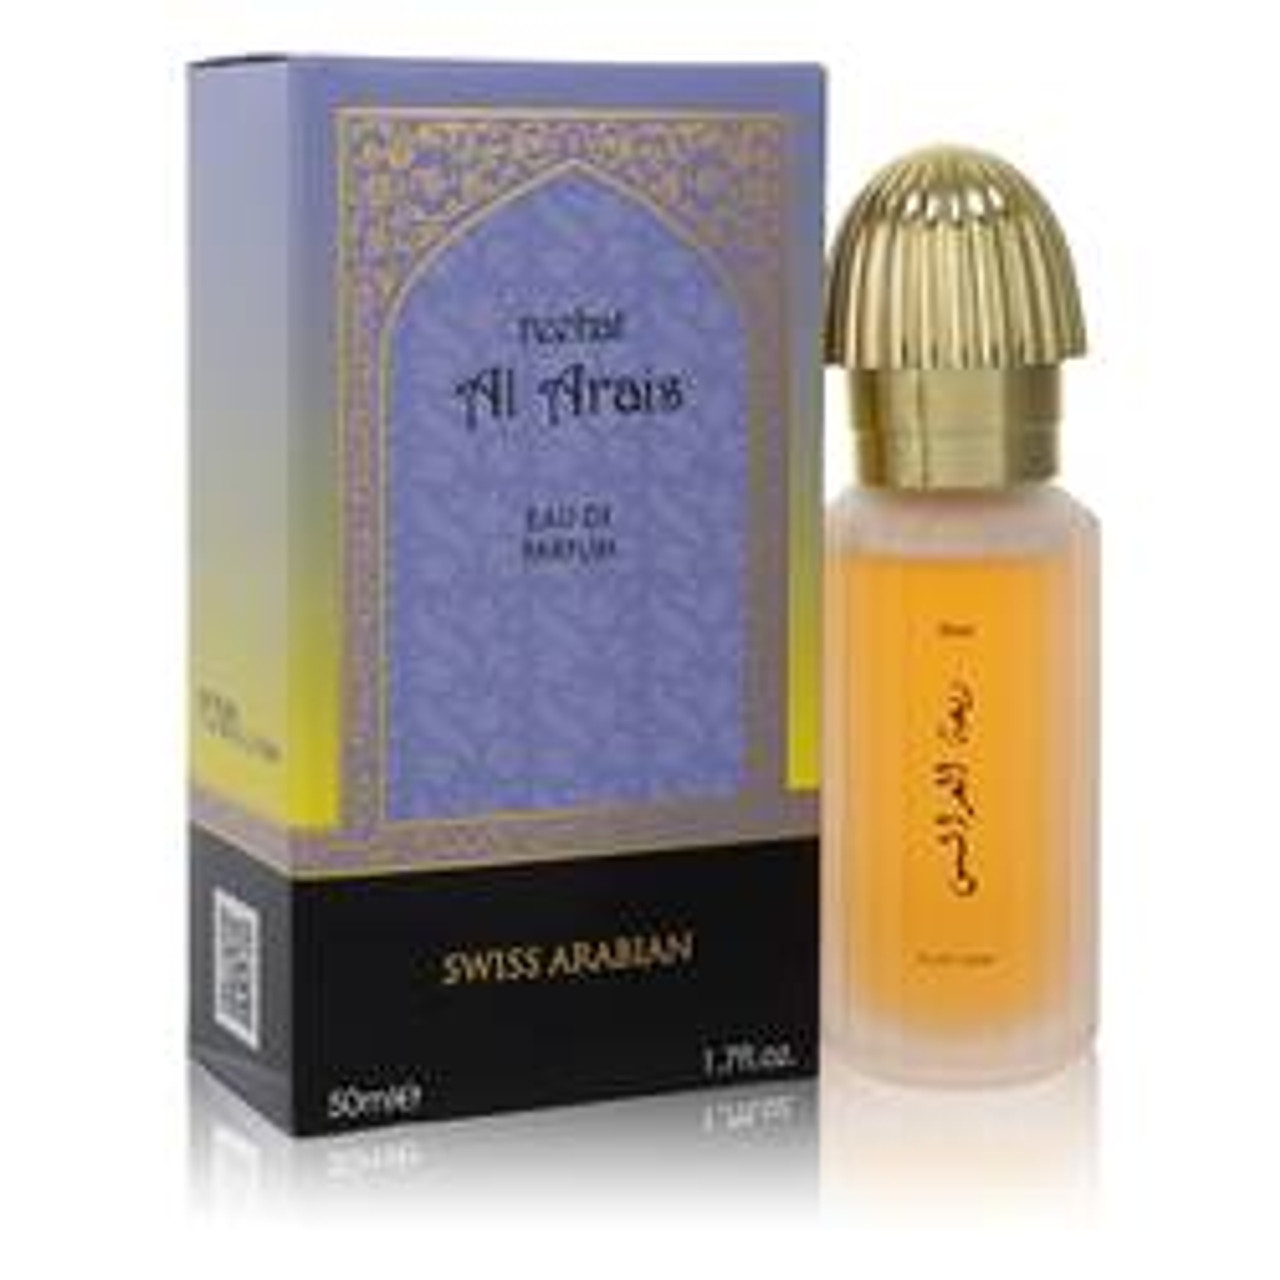 Swiss Arabian Reehat Al Arais Cologne By Swiss Arabian Eau De Parfum Spray 1.7 oz for Men - [From 88.00 - Choose pk Qty ] - *Ships from Miami